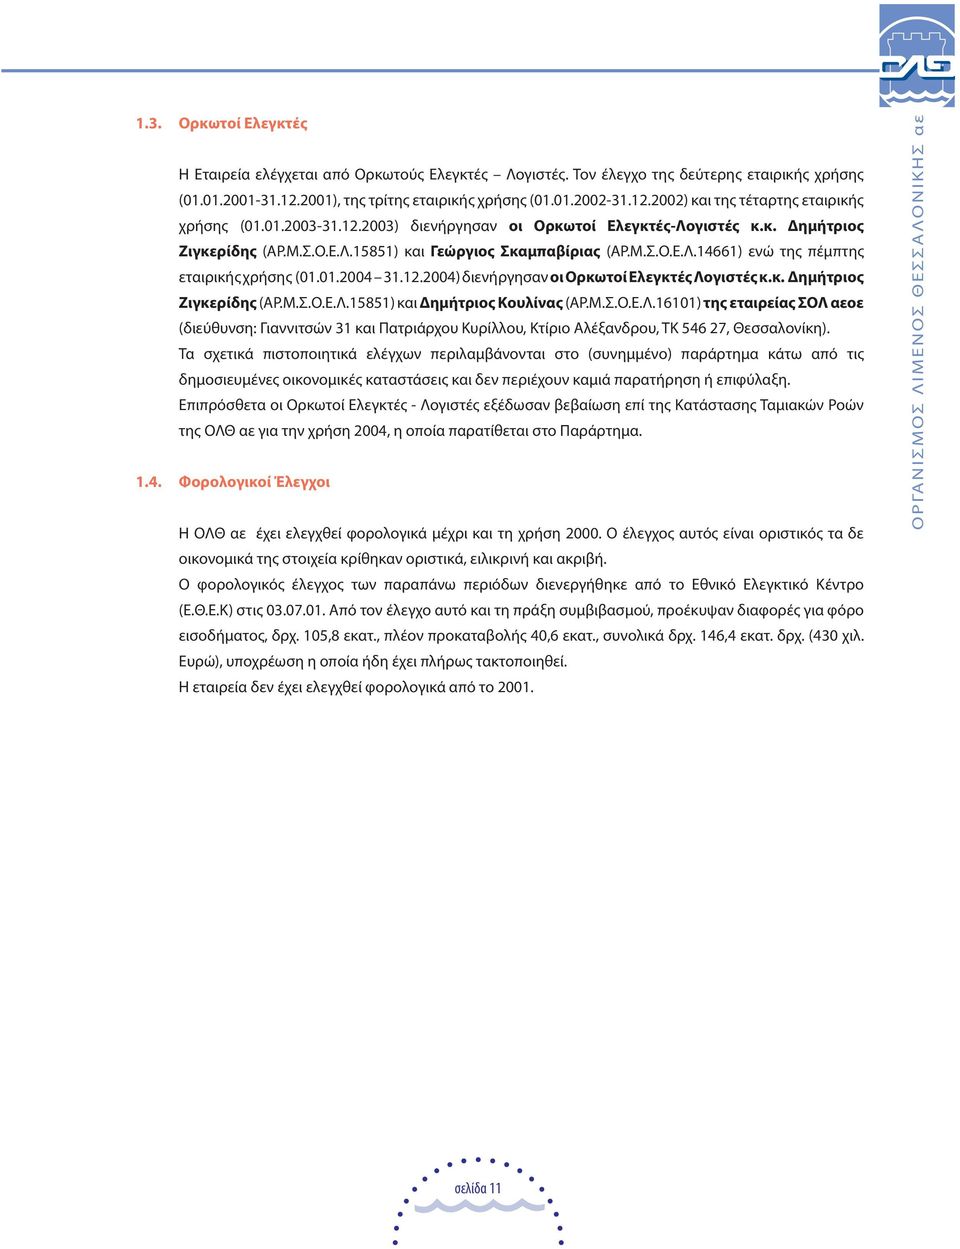 12.2004) διενήργησαν οι Ορκωτοί Ελεγκτές Λογιστές κ.κ. ηµήτριος Ζιγκερίδης (ΑΡ.Μ.Σ.Ο.Ε.Λ.15851) και ηµήτριος Κουλίνας (ΑΡ.Μ.Σ.Ο.Ε.Λ.16101) της εταιρείας ΣΟΛ αεοε (διεύθυνση: Γιαννιτσών 31 και Πατριάρχου Κυρίλλου, Κτίριο Αλέξανδρου, ΤΚ 546 27, Θεσσαλονίκη).